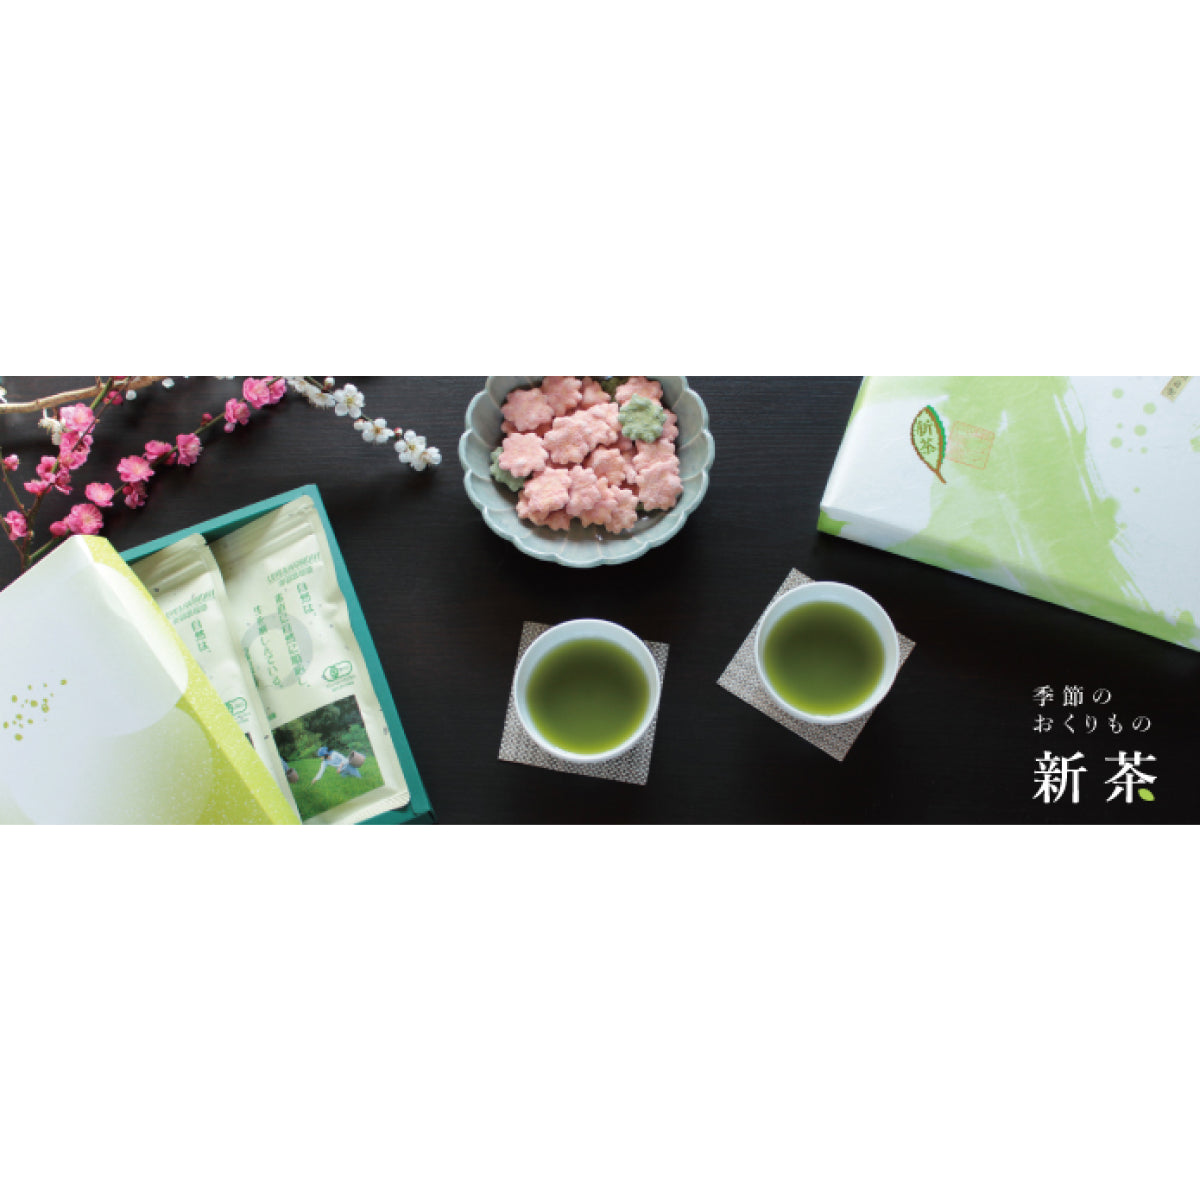 Green Tea "Sencha" 80g/2.82oz x 2pcs